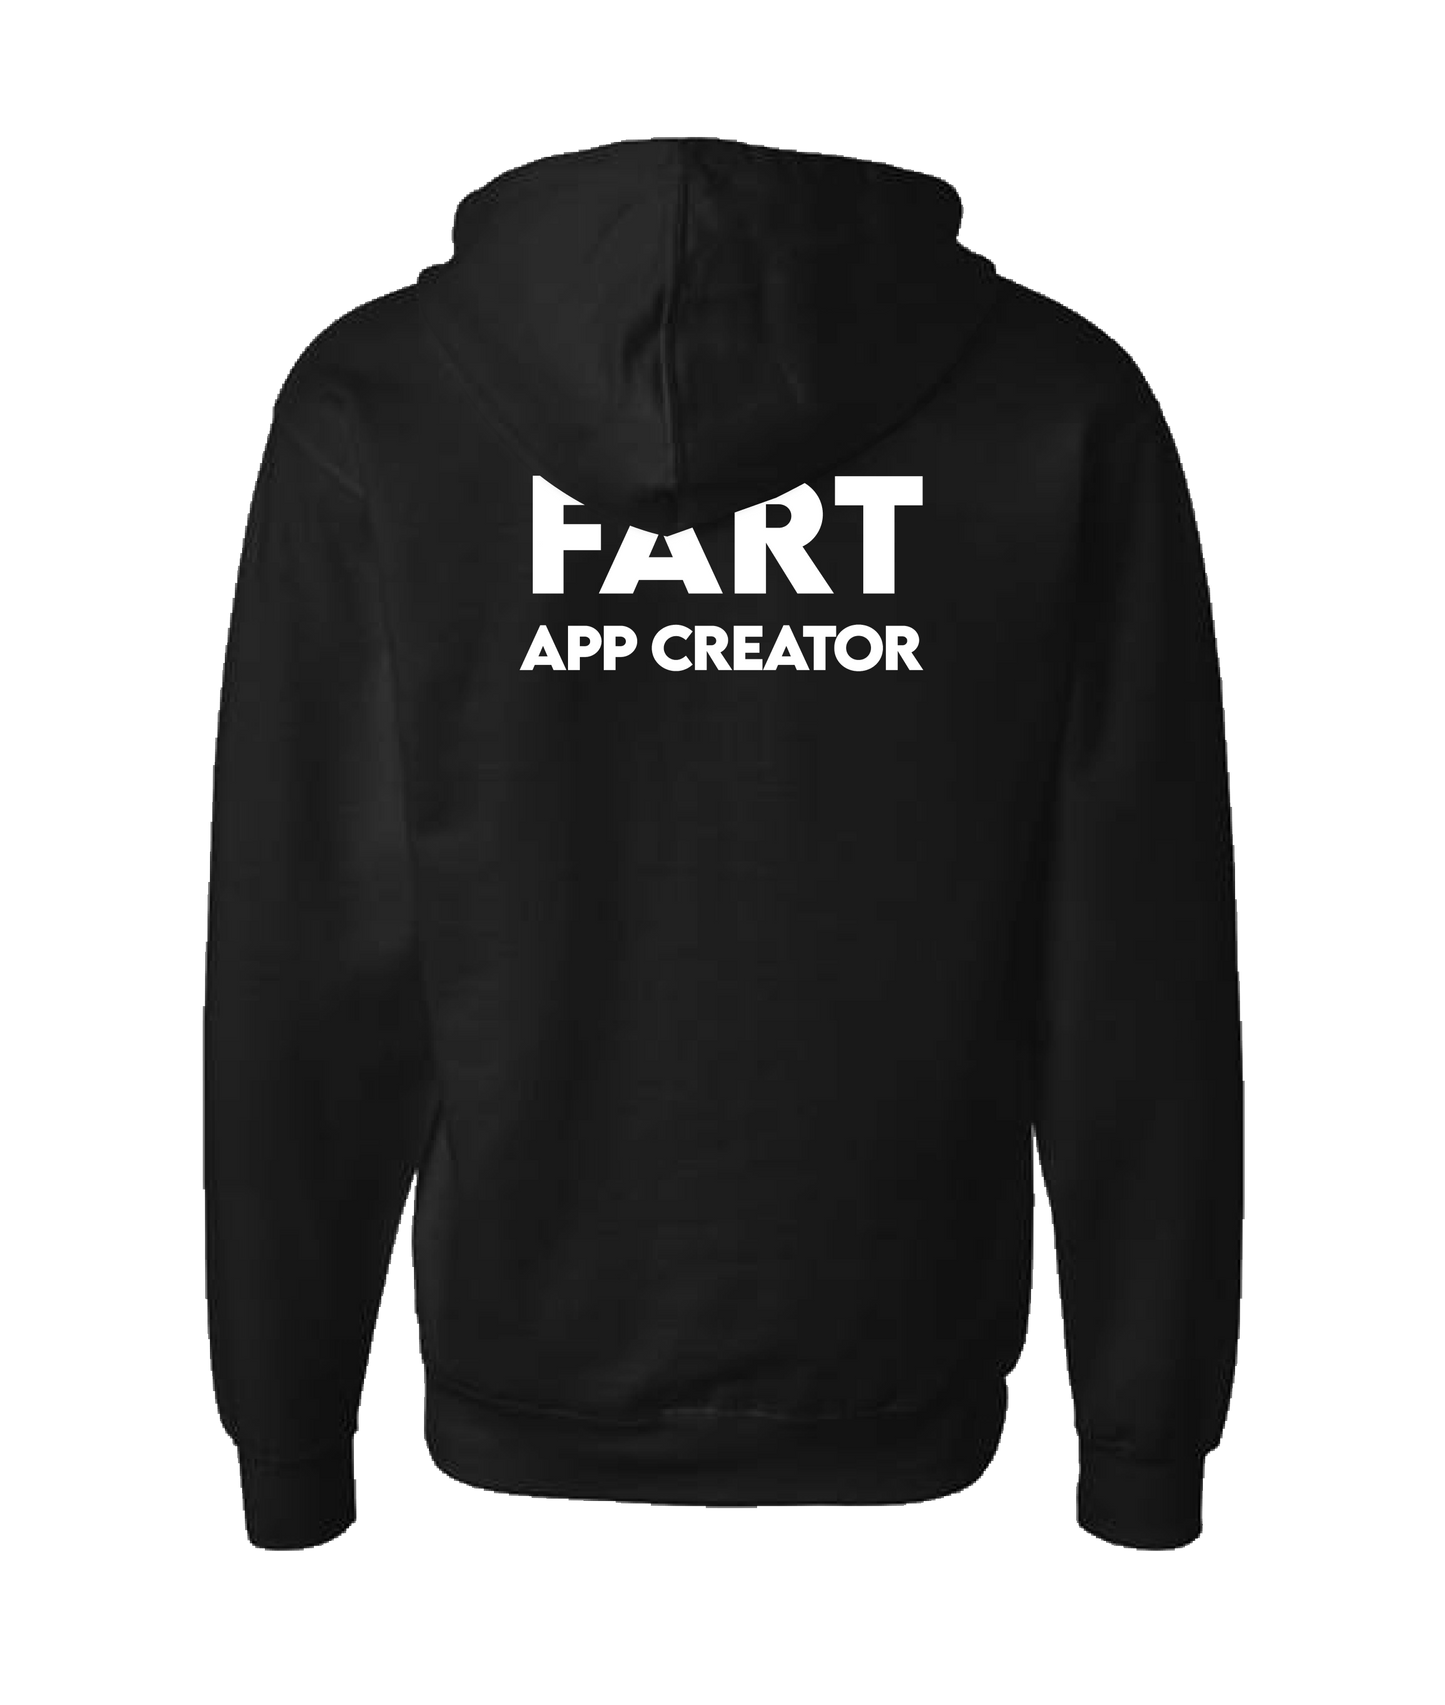 iFart - APP CREATOR - Black Zip Up Hoodie